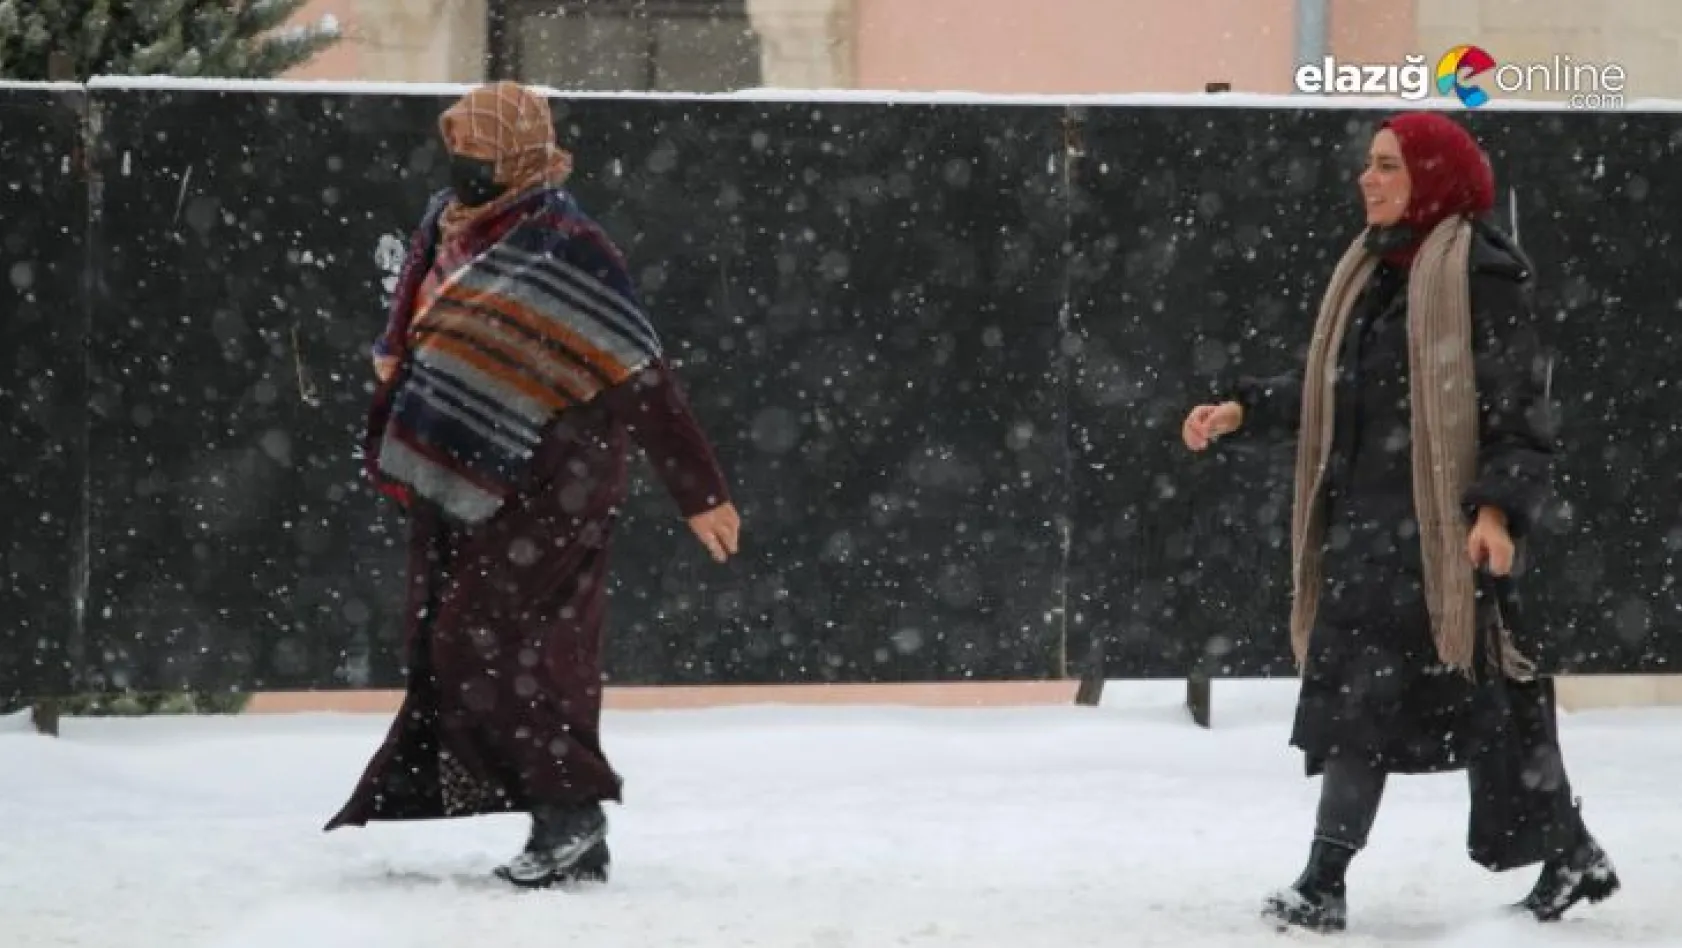 Elazığ'da etkisini gösteren kar yağışı sevinçle karşılandı